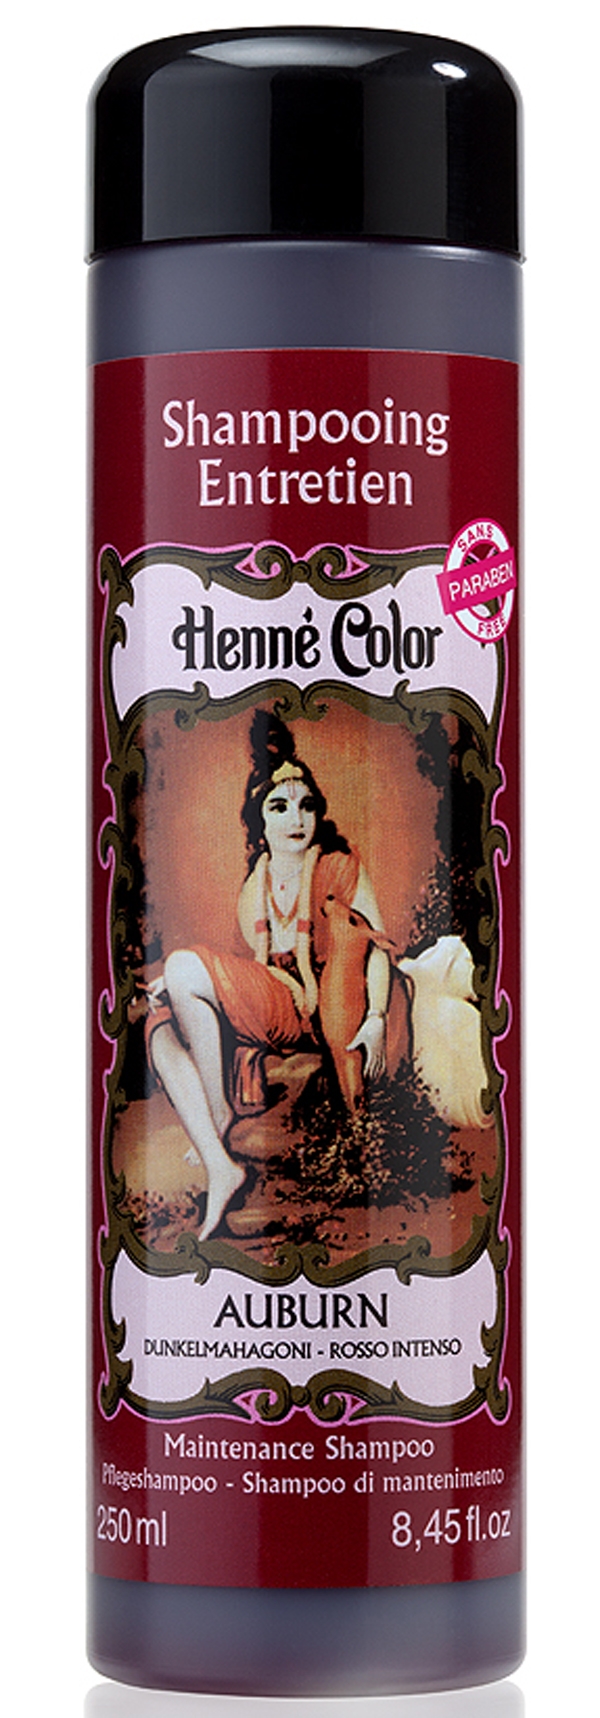 Shampooing entretien Henné Color auburn 250ml